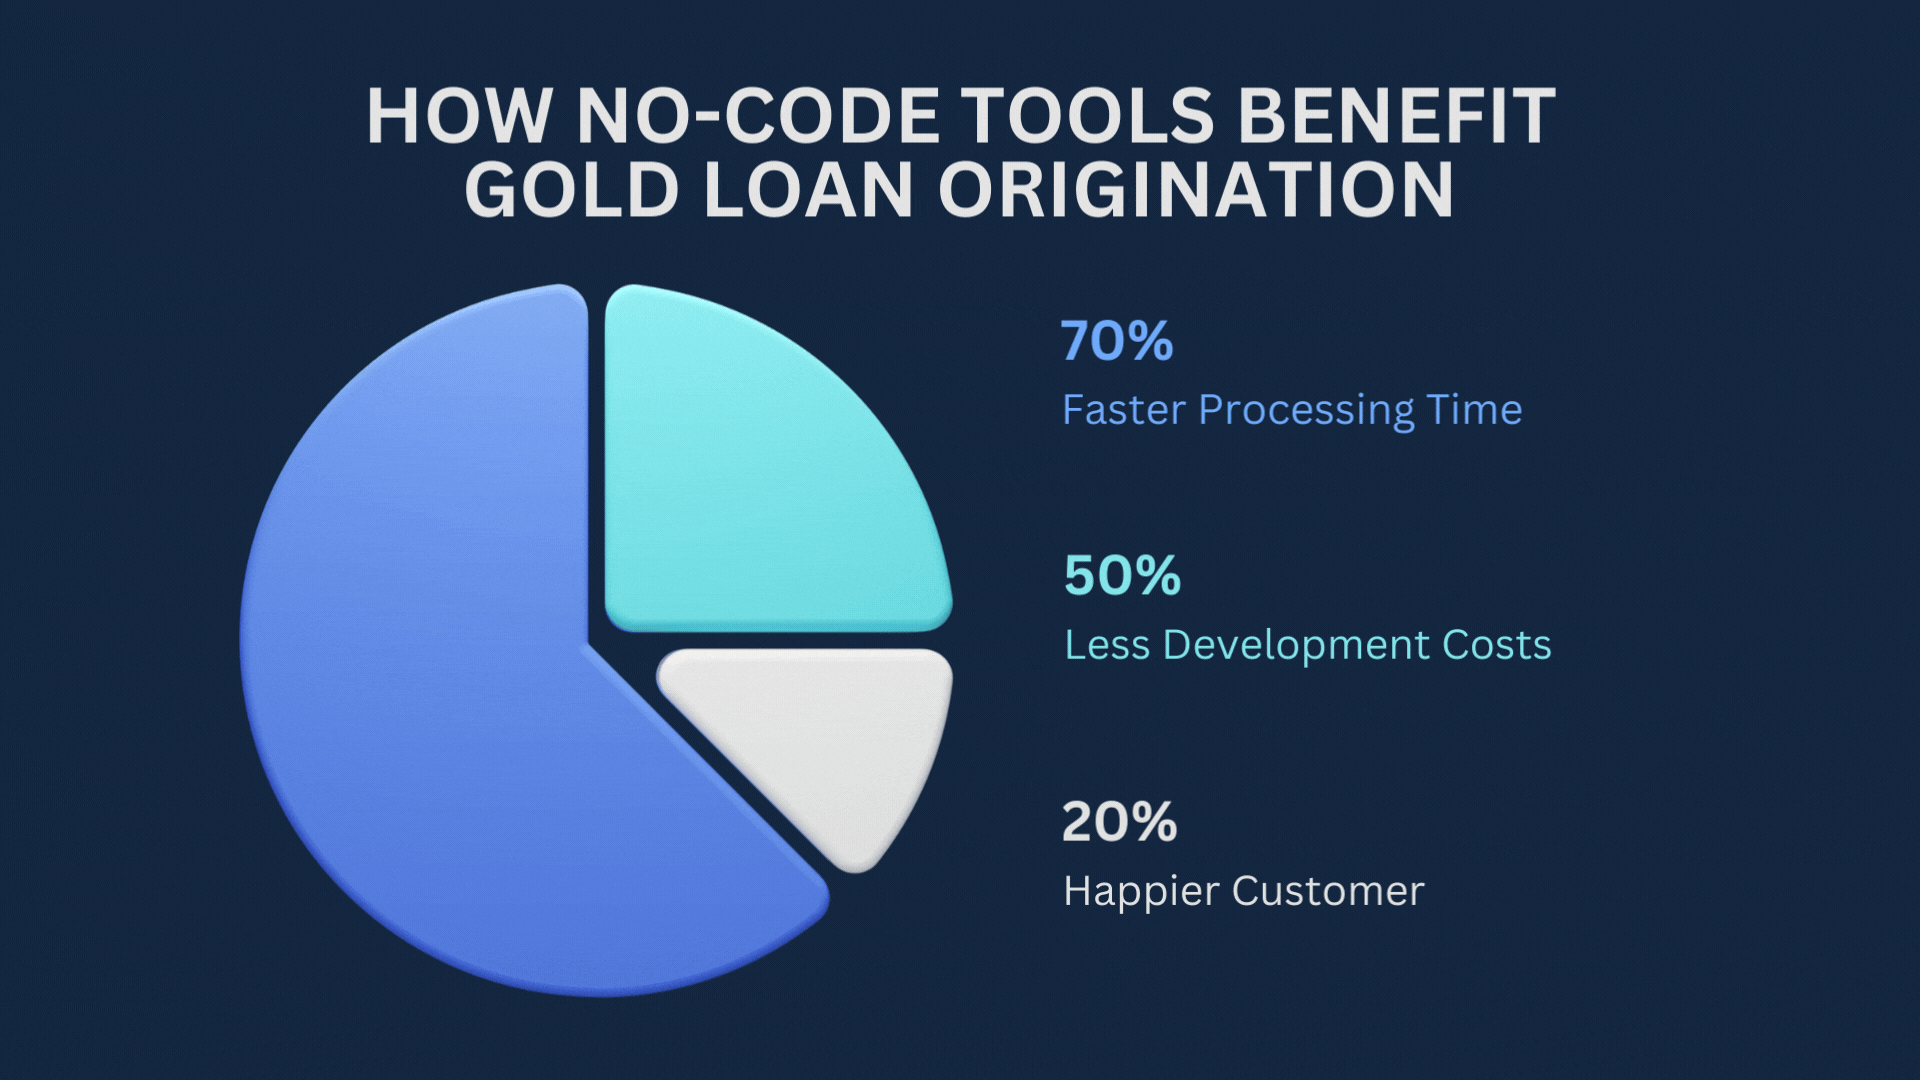 No-code tools for lending origination